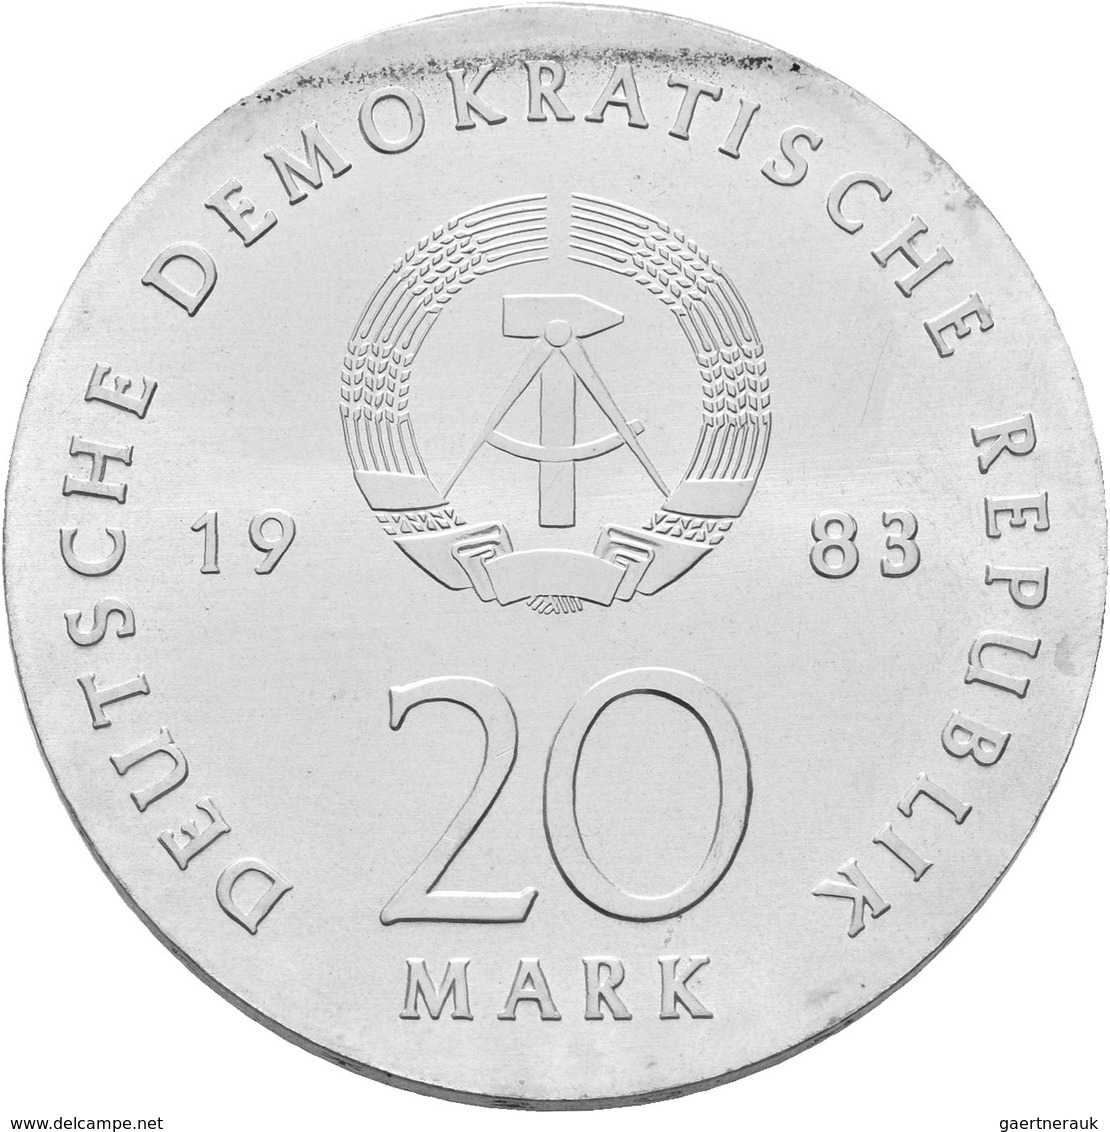 DDR: Typensammlung DDR aufbewahrt in 2 DUCAT-Albums. Kleinmünzen von 1 Pfennig bis 2 Mark sowie auge